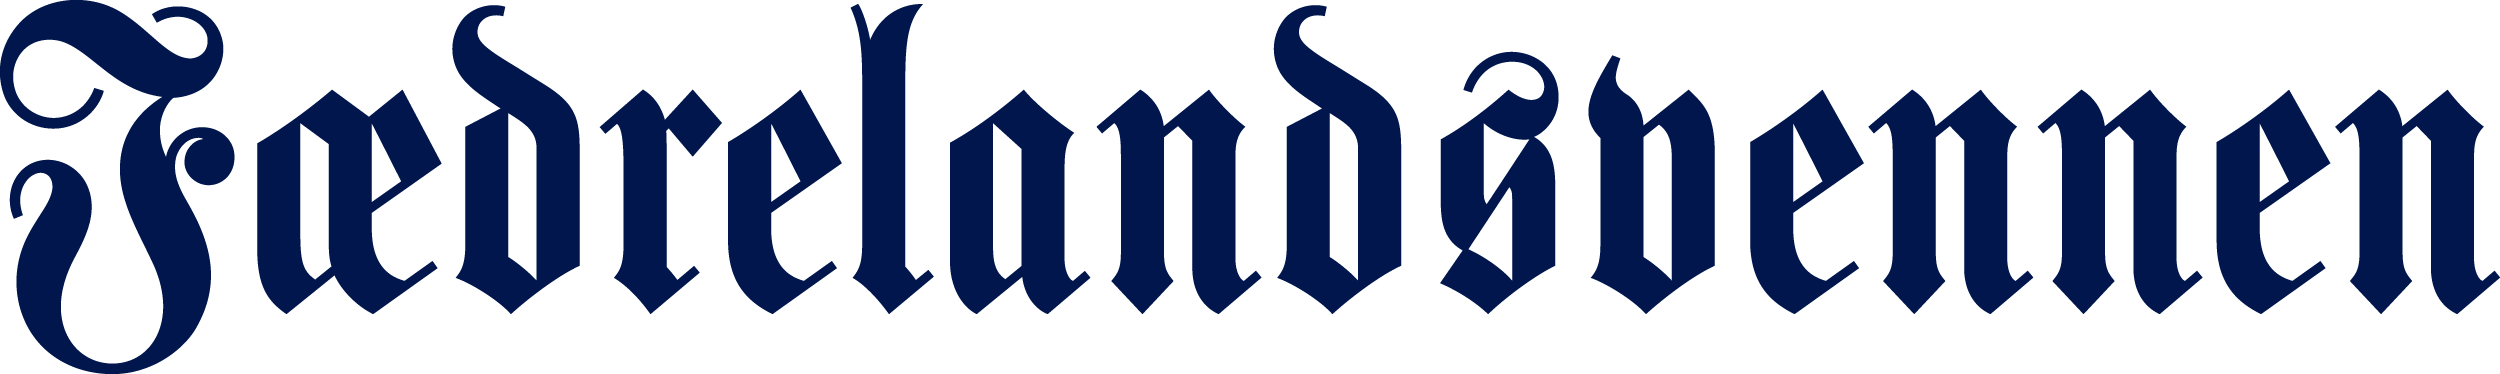 Fædrelandsvennen logo